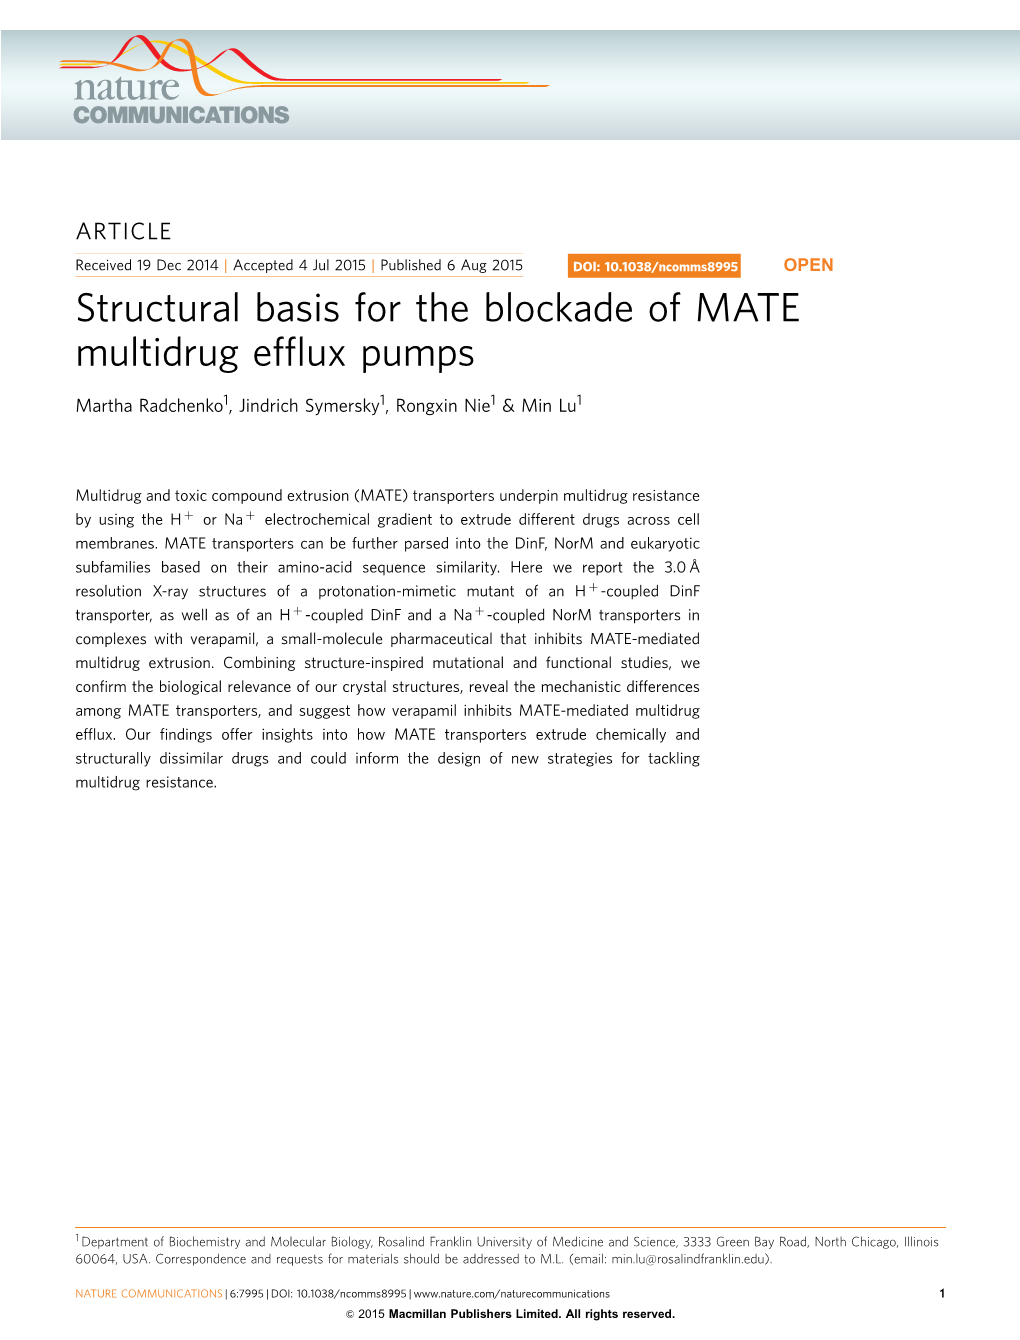 Structural Basis for the Blockade of MATE Multidrug Efflux Pumps